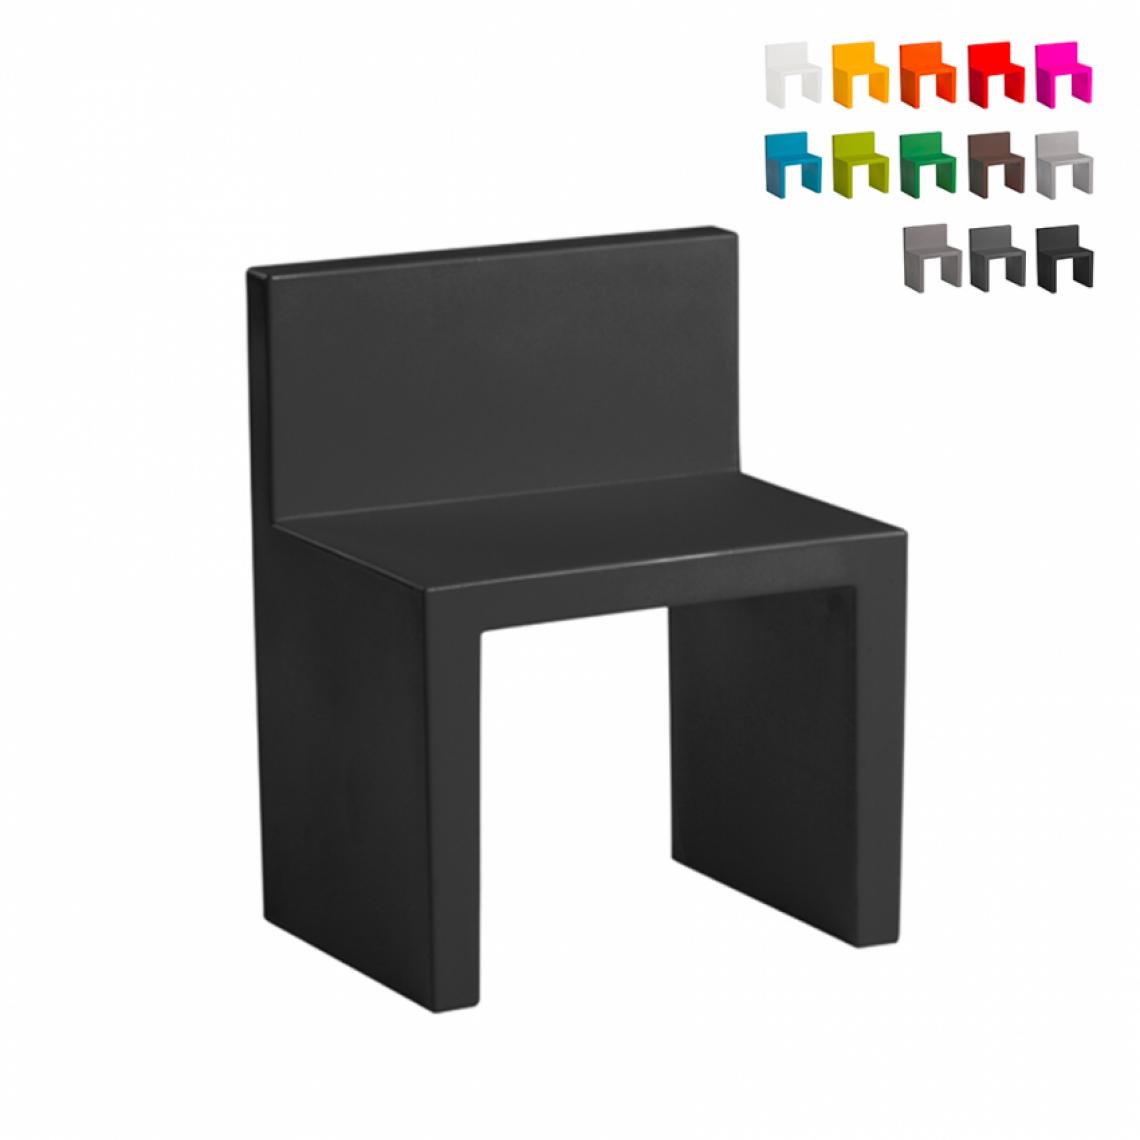 Slide - Chaise au design moderne Slide Angolo Retto pour la maison et le jardin, Couleur: Noir - Chaises